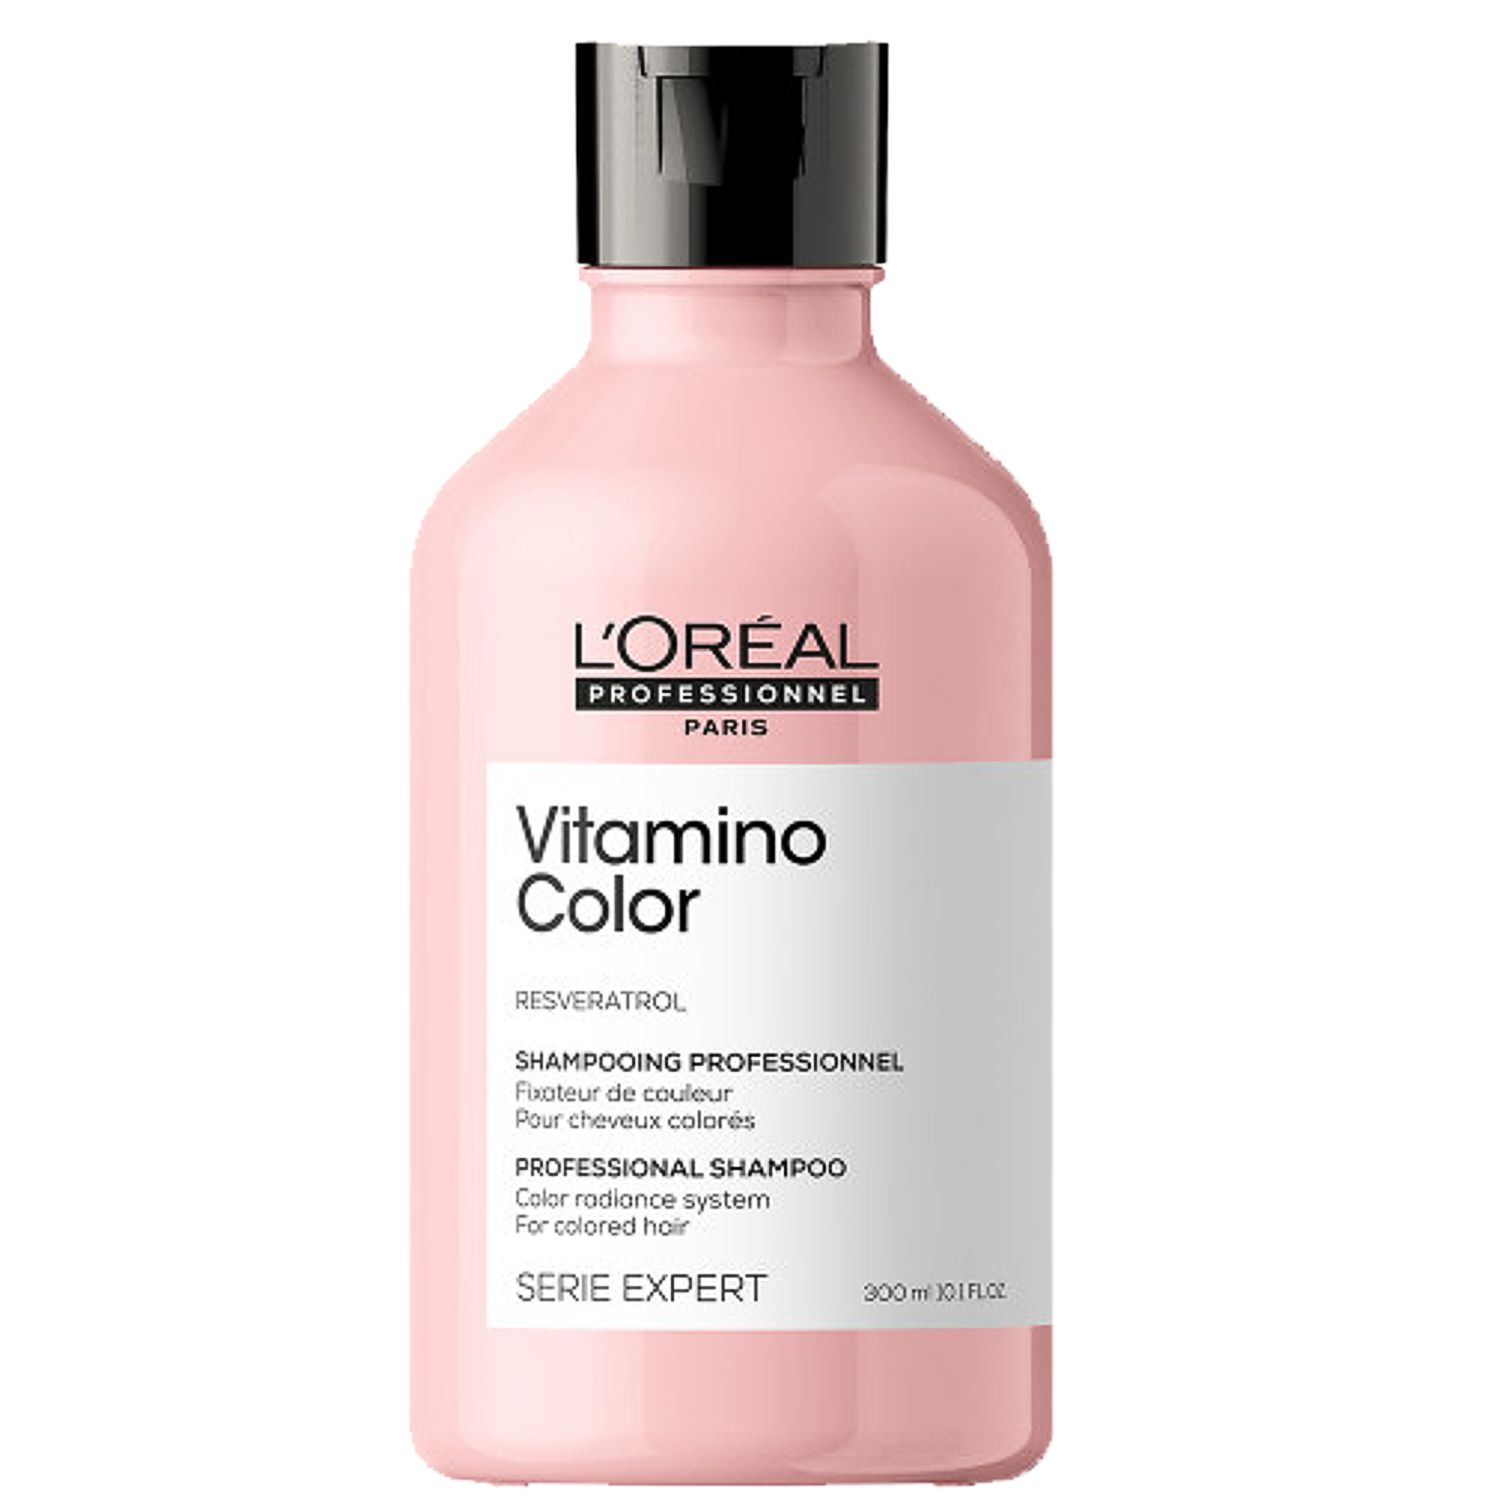 L'ORÉAL Expert VITAMINO COLOR RESVERATROL Professional Shampoo 300 ml